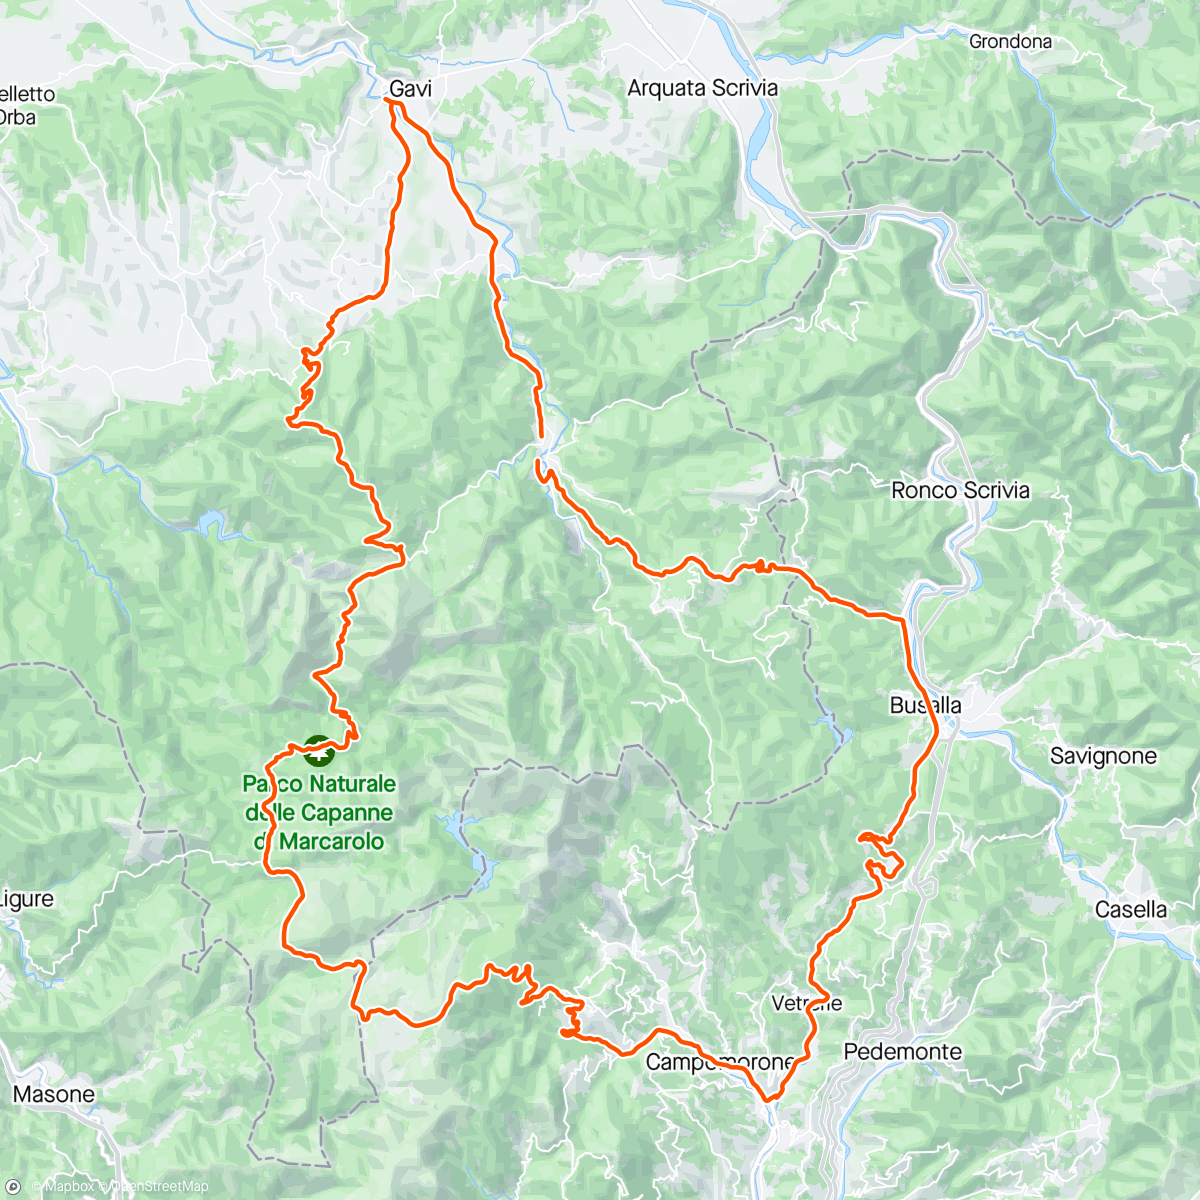 Map of the activity, Voltaggio - Gavi - Brisco - Capanne - Praglia - Giovi - Castagnola - Voltaggio